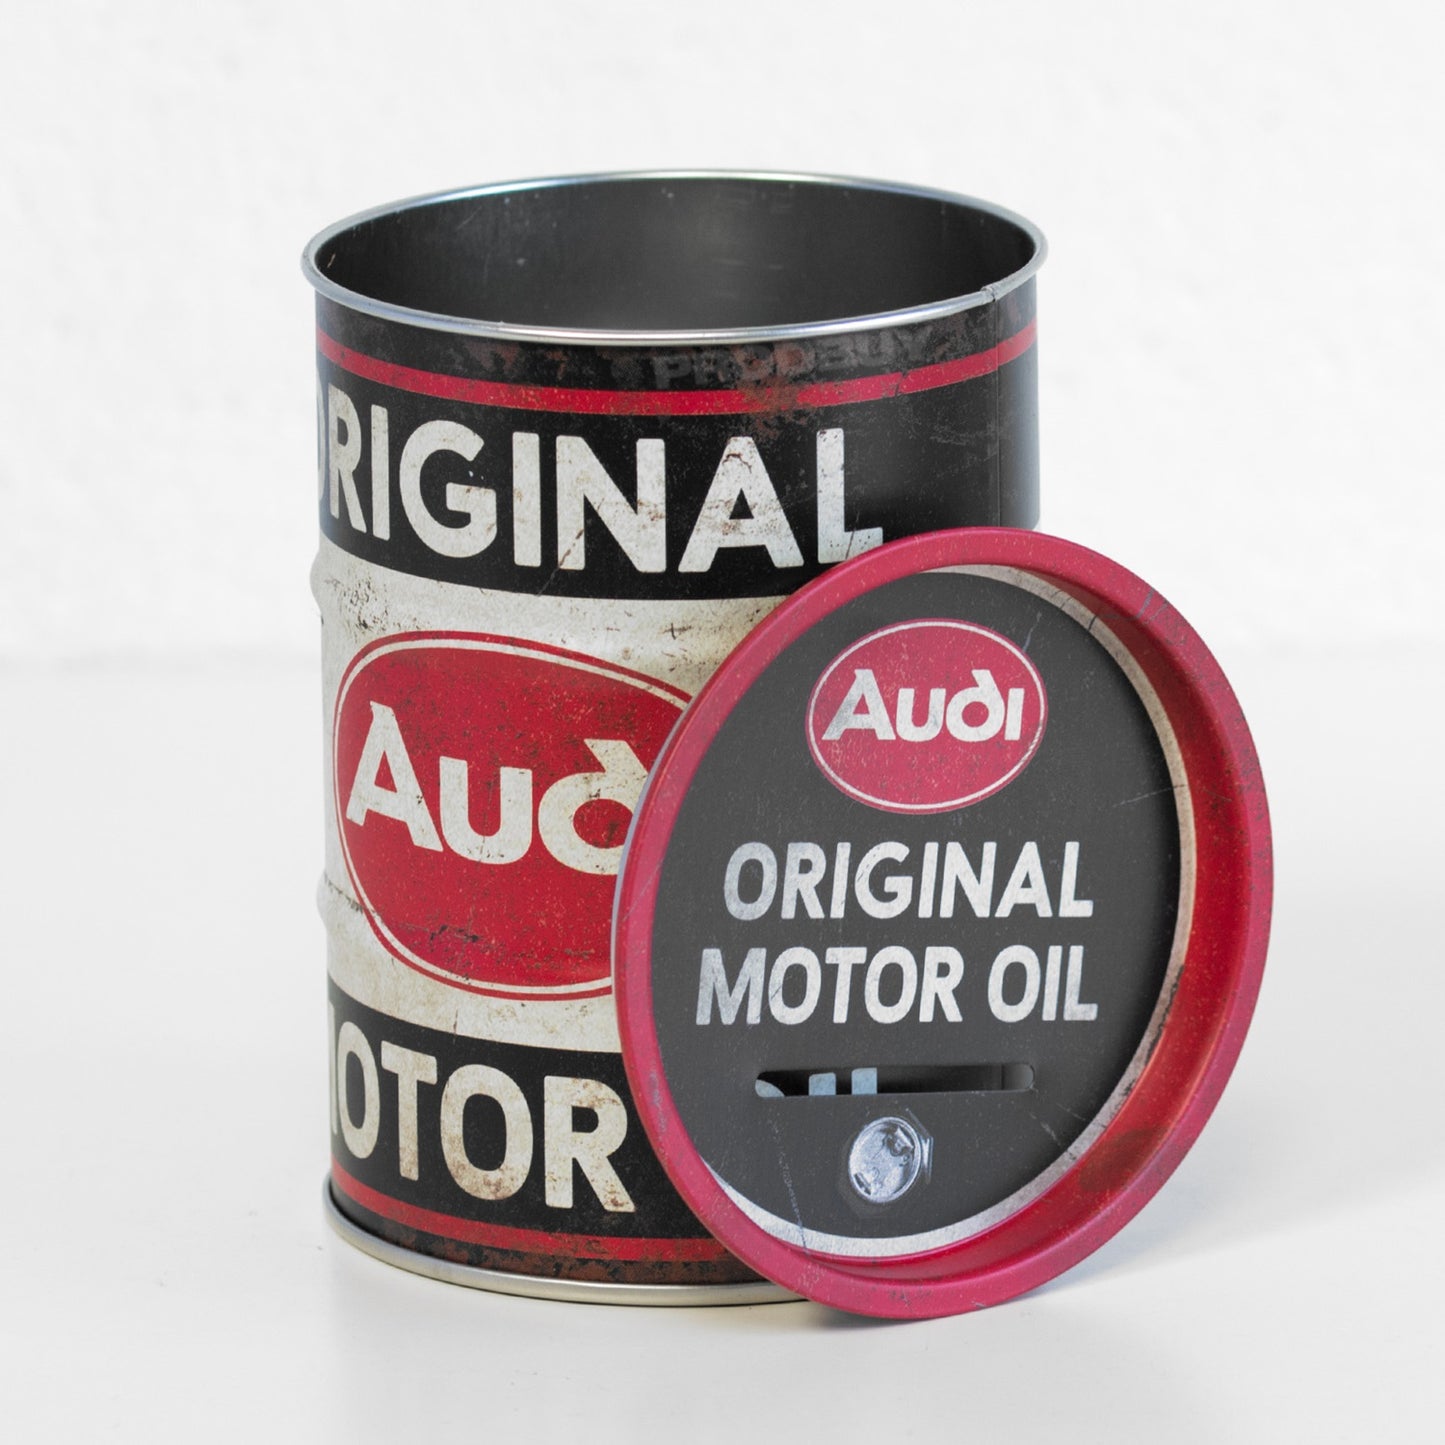 Audi 'Original Motor Oil' Money Tin Coin Savings Pot